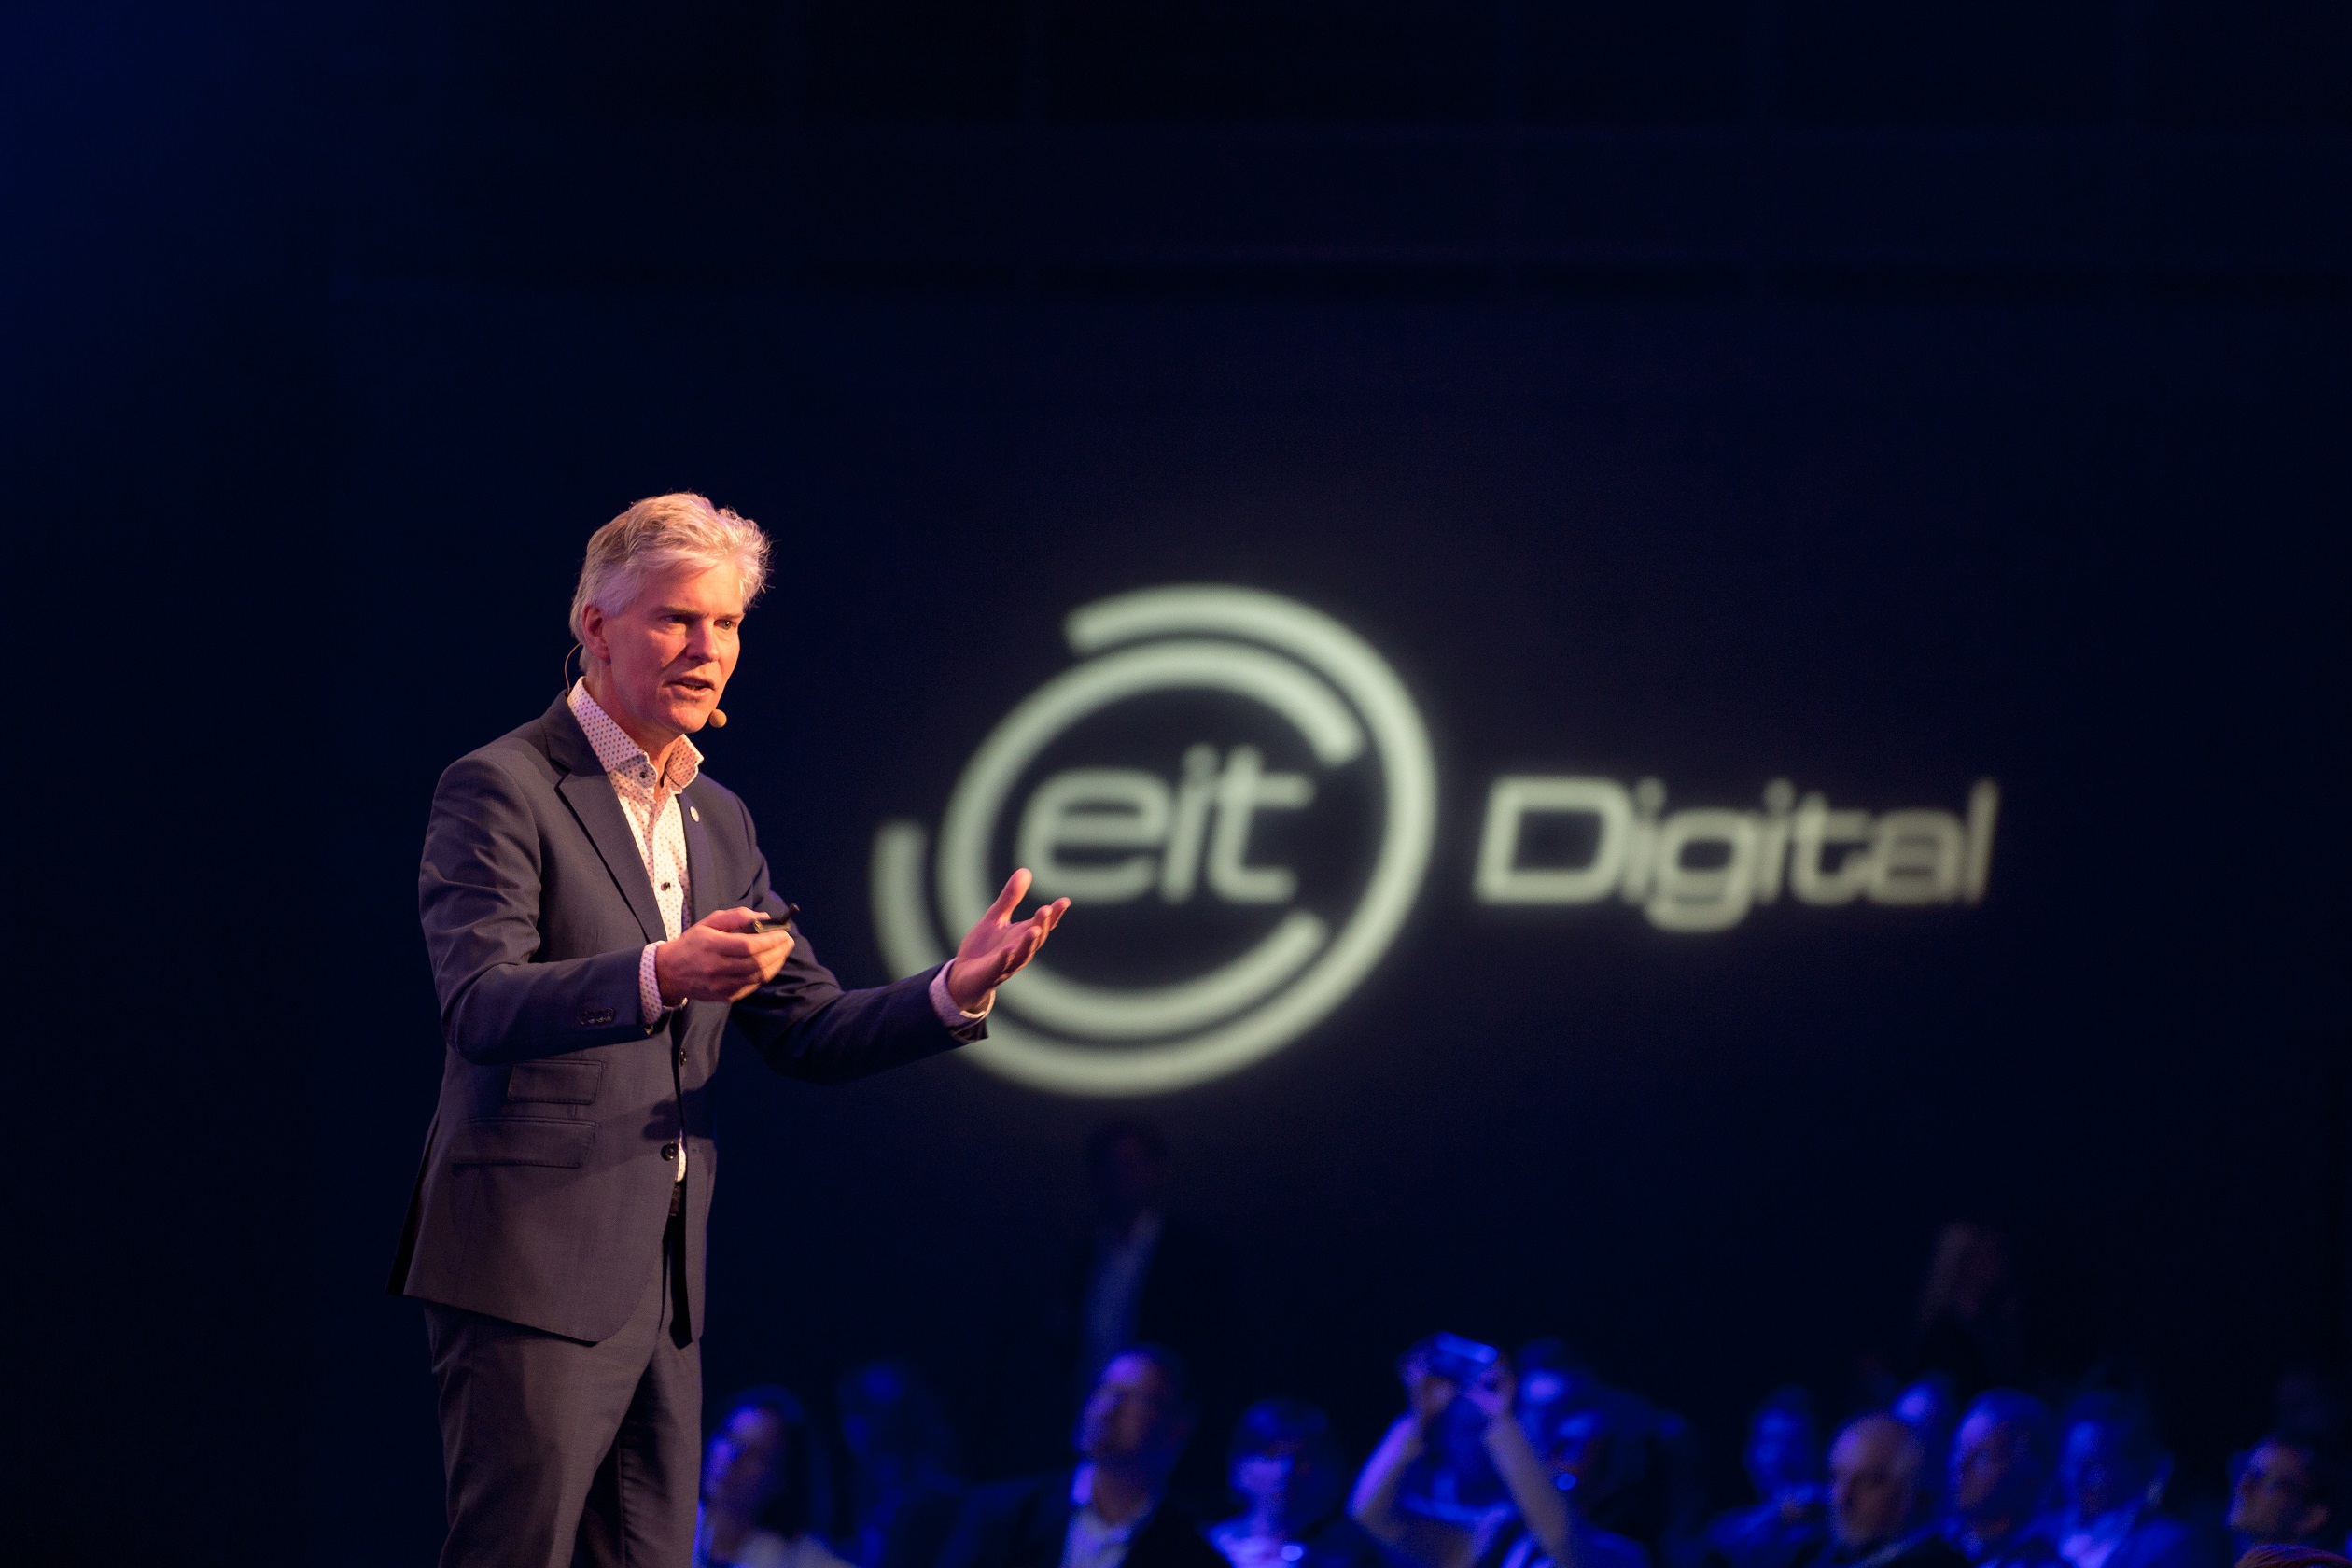 Willem Jonker, az EIT Digital vezérigazgatója